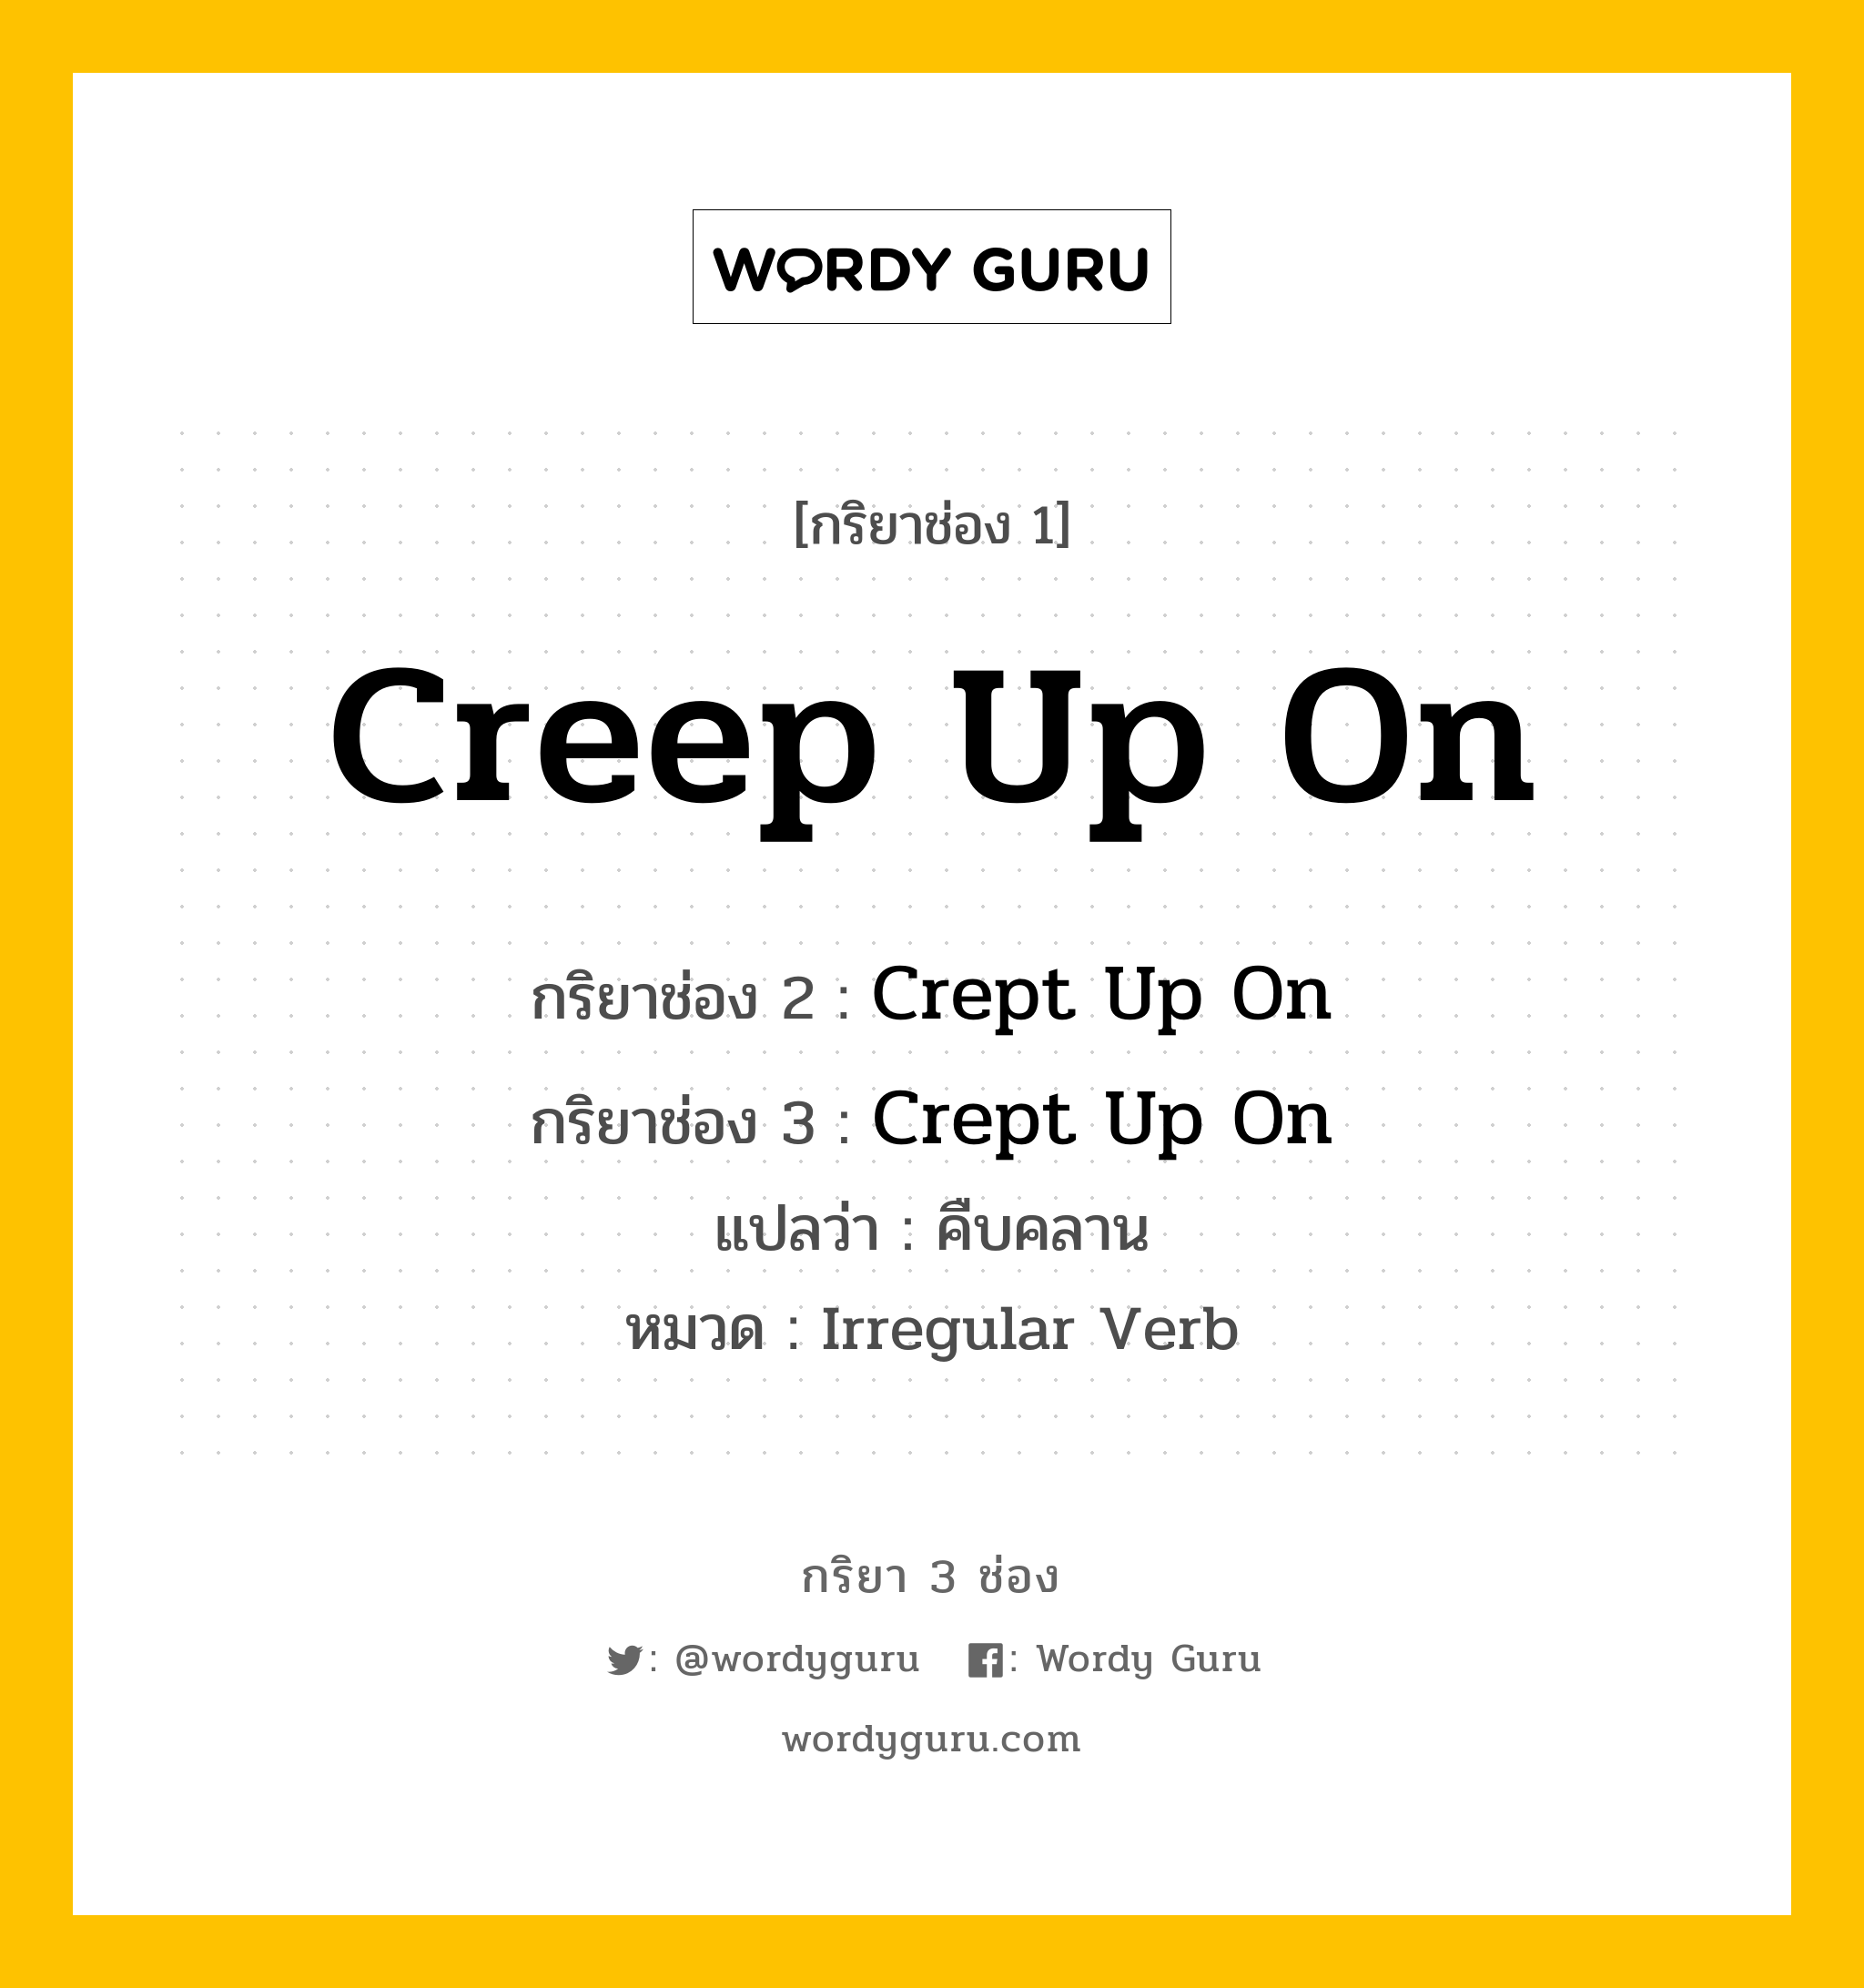 กริยา 3 ช่อง: Creep Up On ช่อง 2 Creep Up On ช่อง 3 คืออะไร, กริยาช่อง 1 Creep Up On กริยาช่อง 2 Crept Up On กริยาช่อง 3 Crept Up On แปลว่า คืบคลาน หมวด Irregular Verb หมวด Irregular Verb